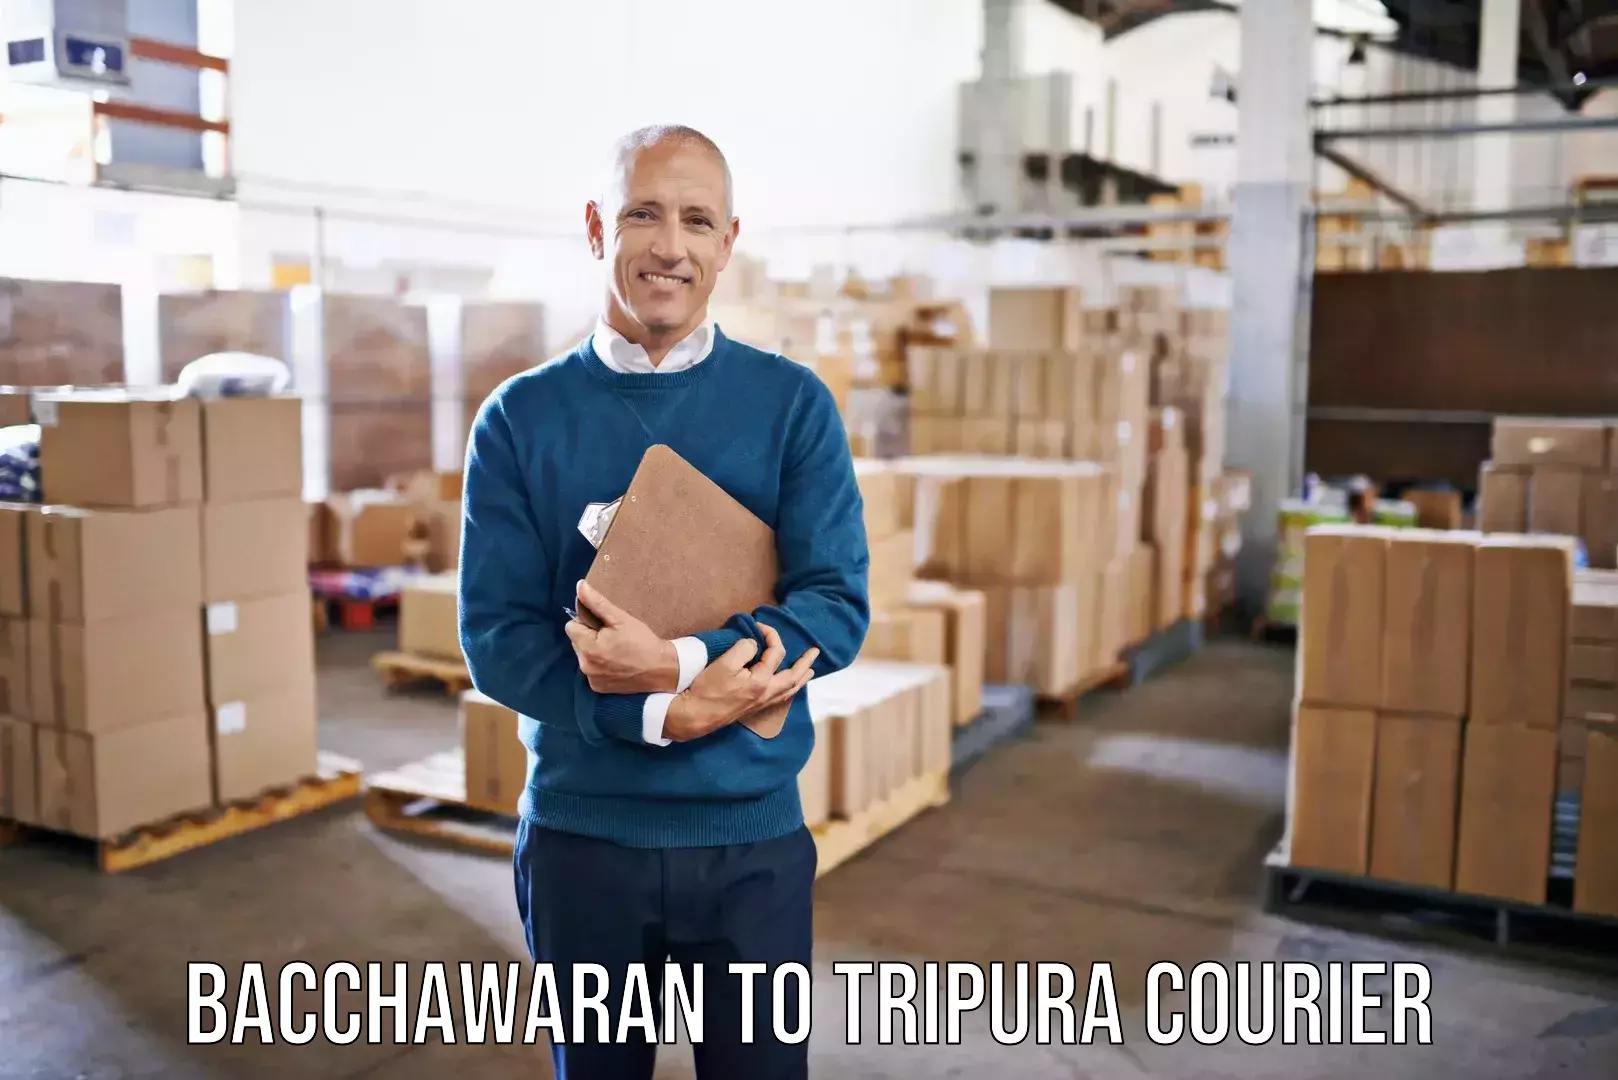 Quality furniture shipping Bacchawaran to Tripura